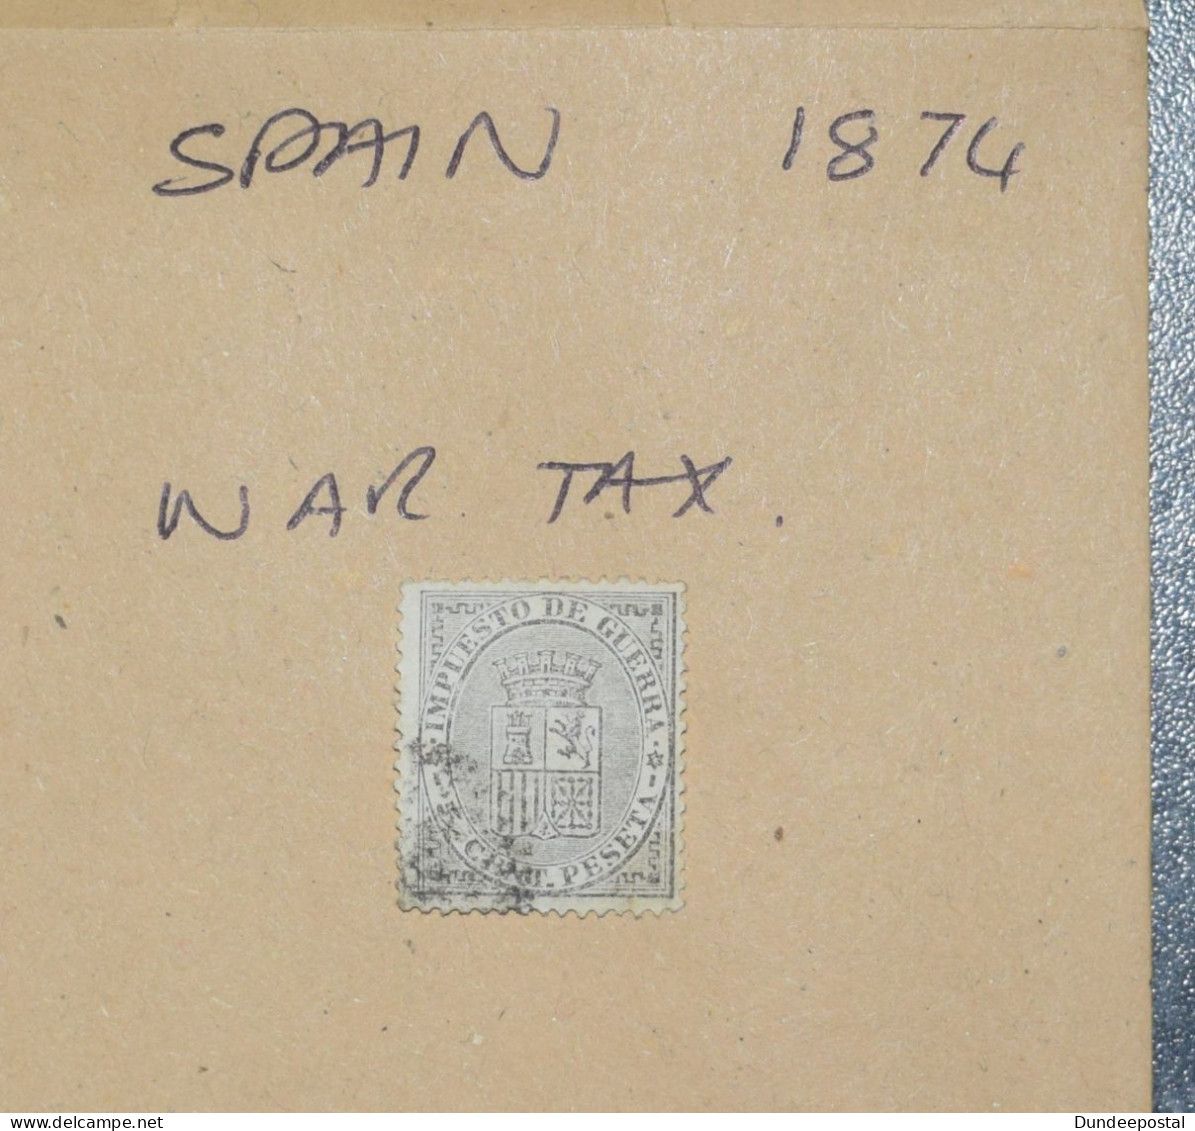 SPAIN  STAMPS  War Tax  1874  ~~L@@K~~ - Usati